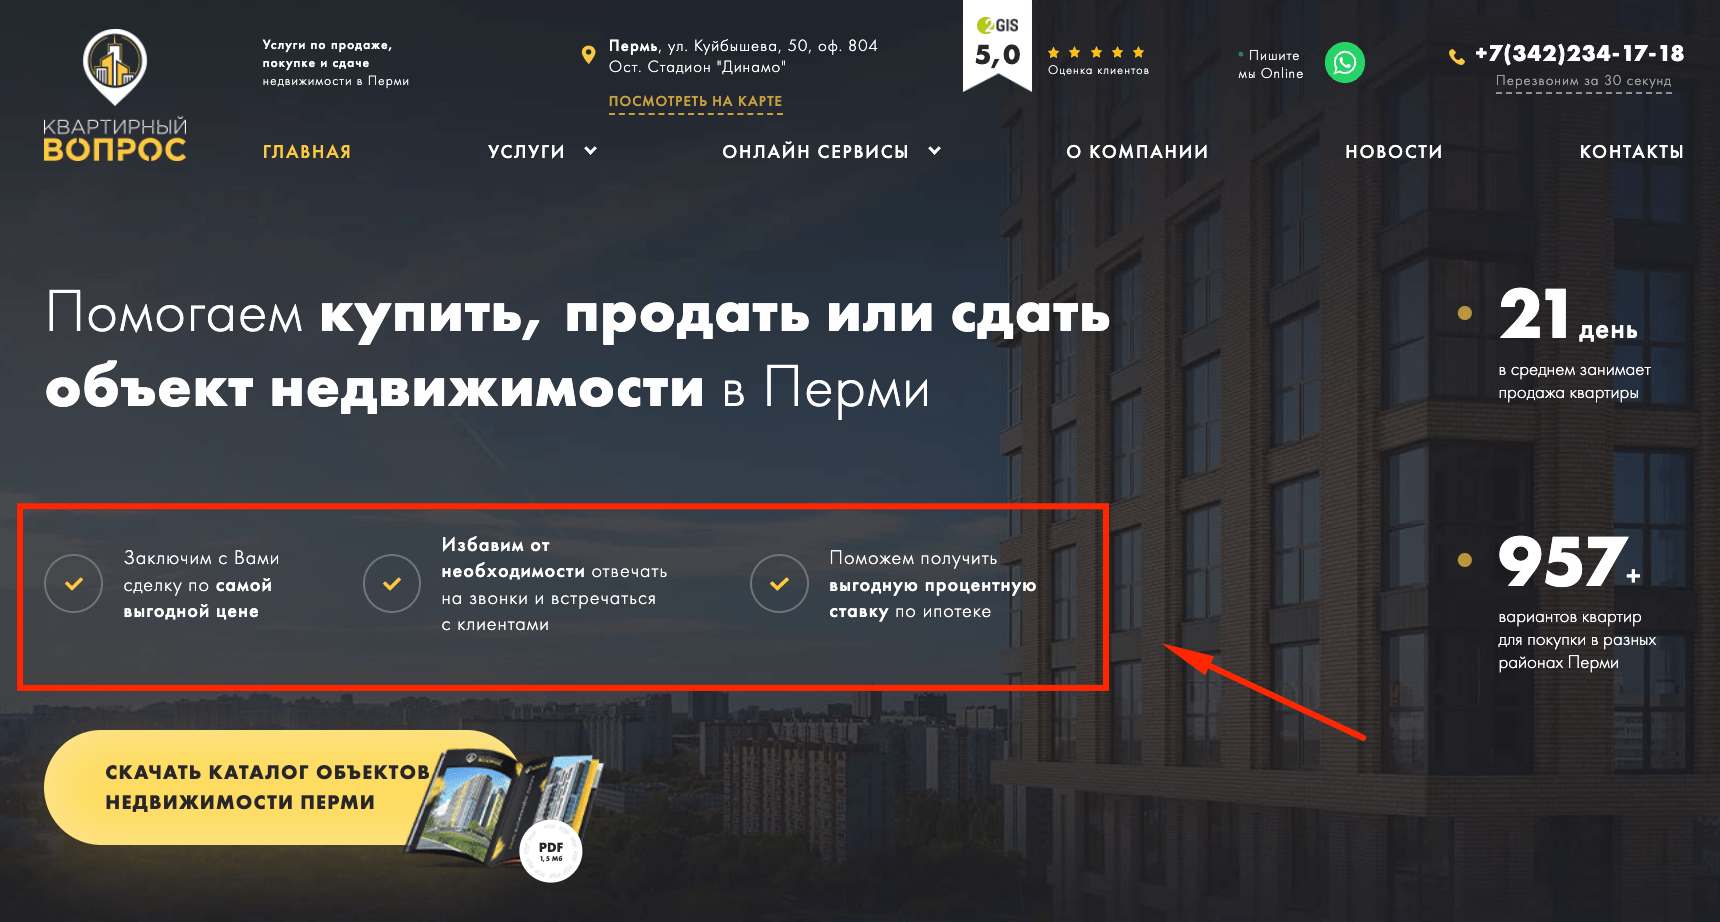 Краткая выжимка УТП агентства недвижимости в буллетах первого экрана сайта